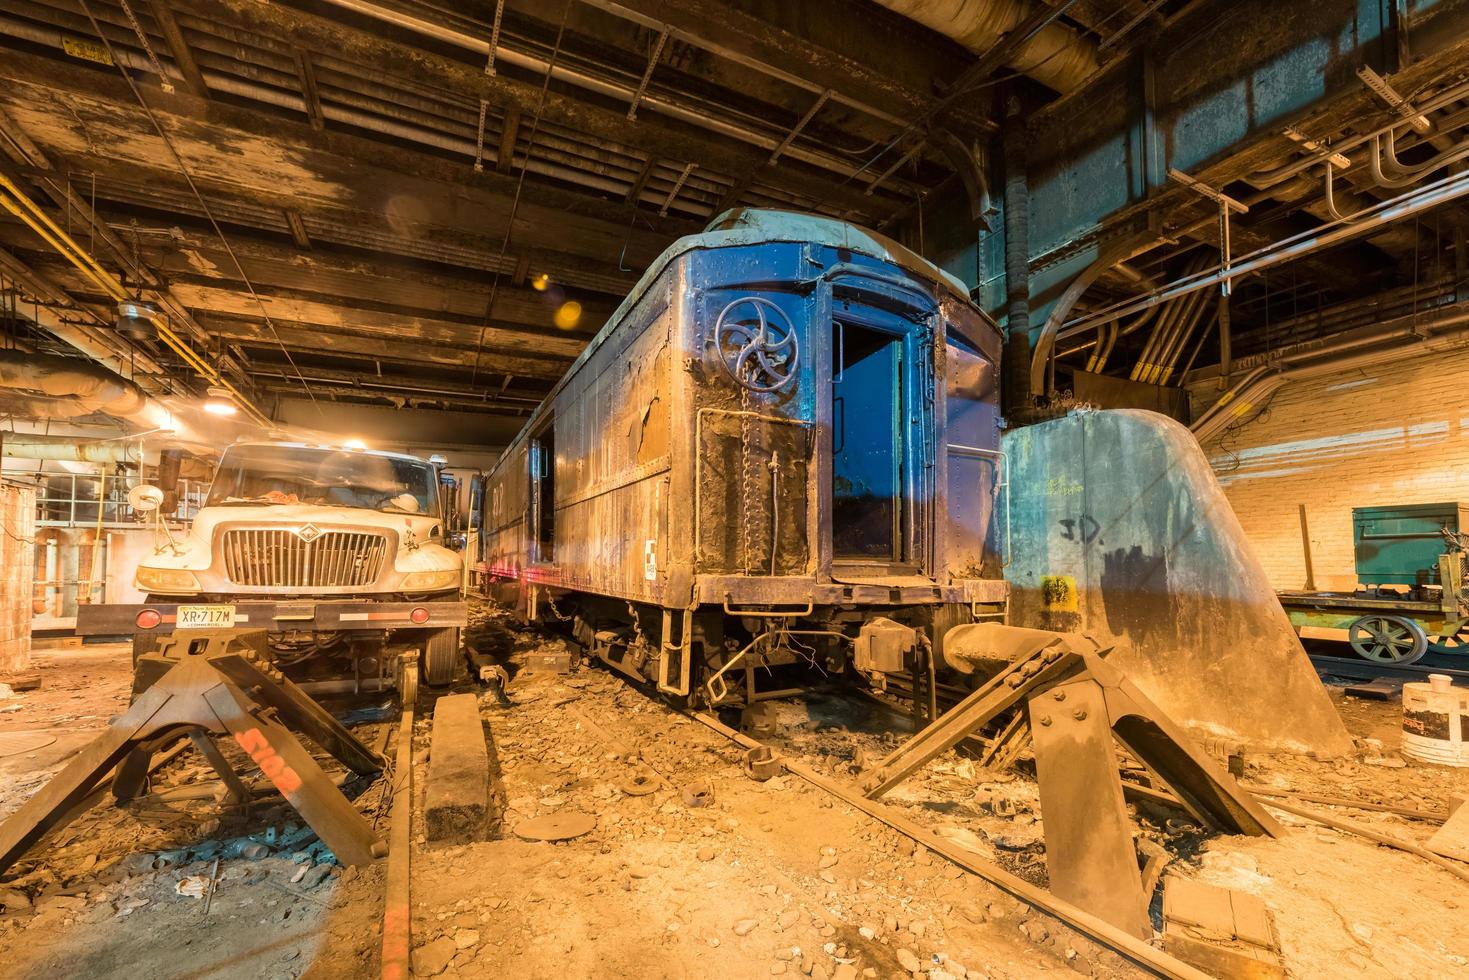 nova york - 28 de dezembro de 2015 - trilho 61 na grand central station com um vagão de trem especialmente construído que continha a limusine blindada perfurada especialmente projetada do fdr. conservada desde 1945. foto